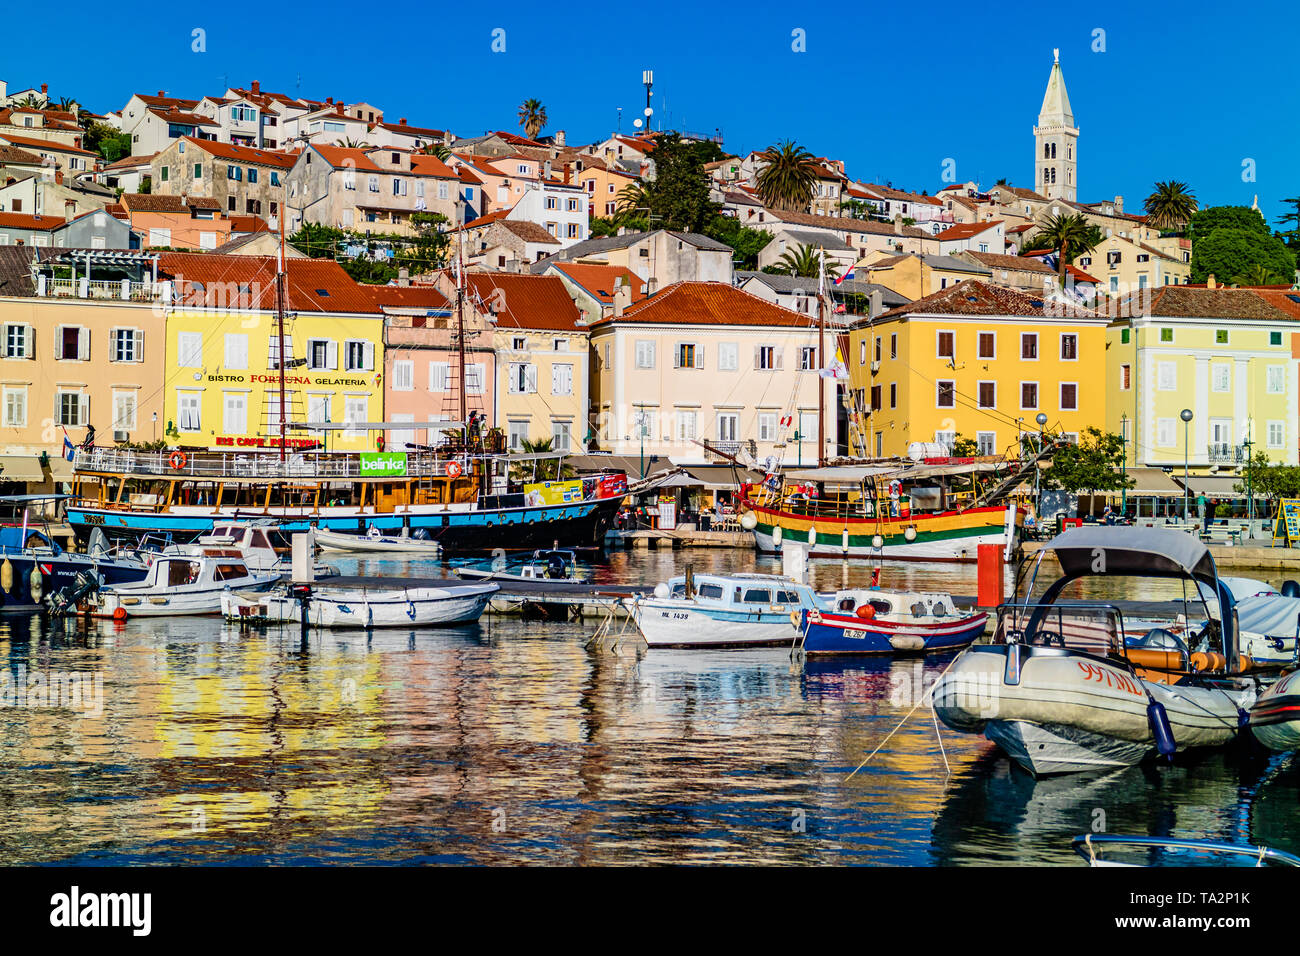 Port avec bateaux de loisirs touristiques et maisons colorées dans le centre de la ville, l'île de Losinj, Mali Losinj, Croatie. Mai 2017. Banque D'Images